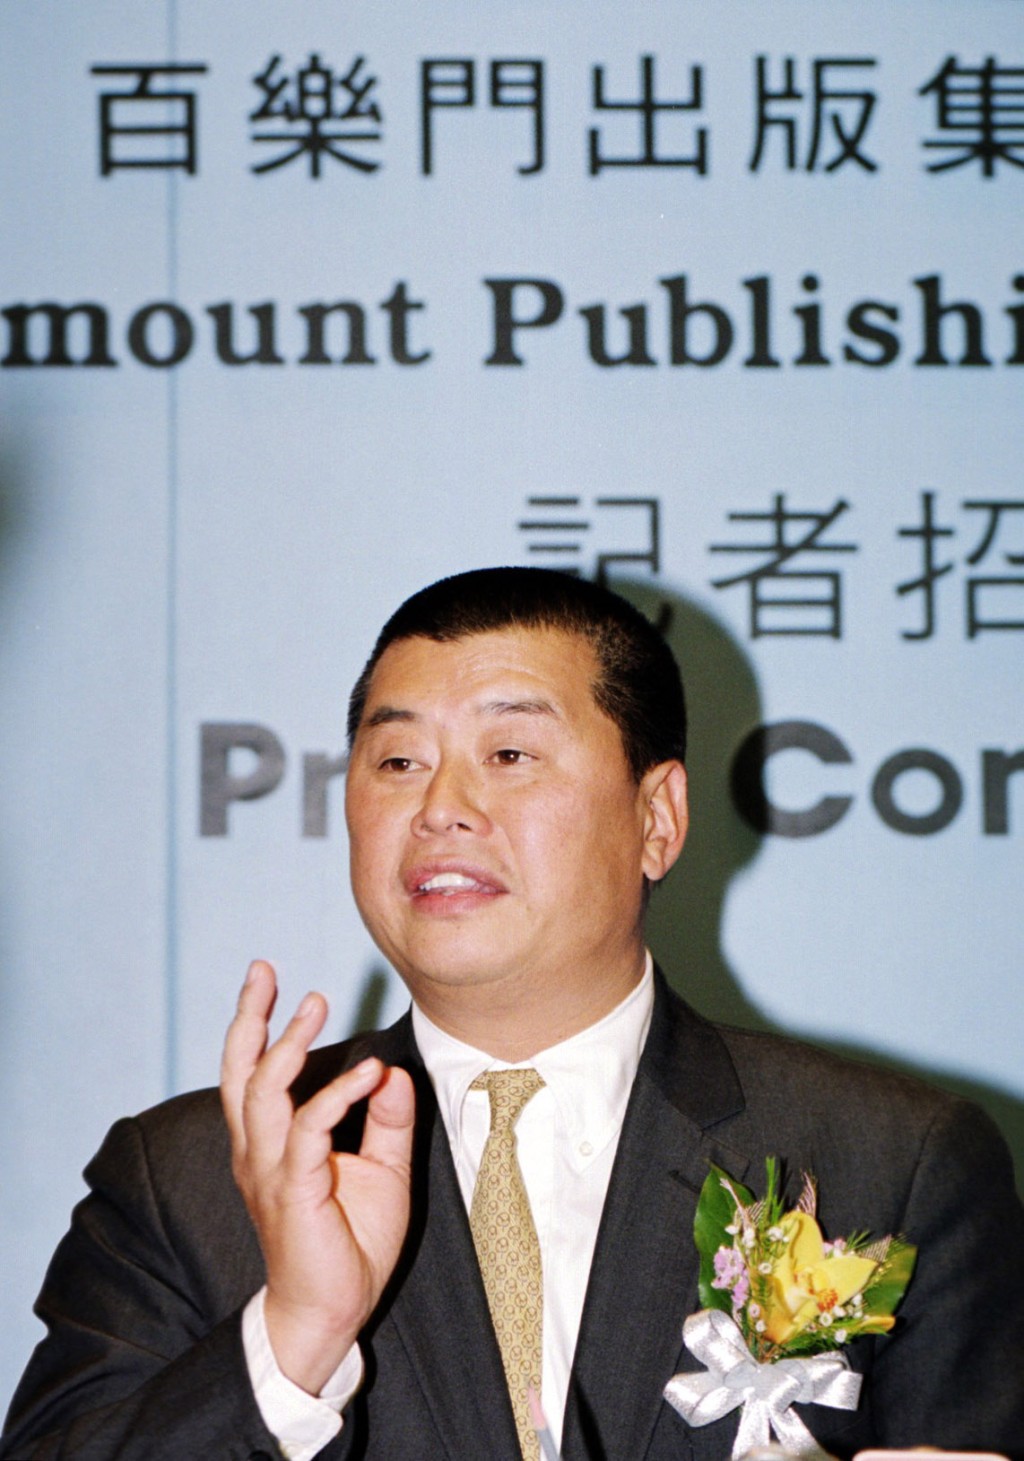 壹传媒注入资产时，与监管部门多番角力，联交所审批时曾提出多达数百条书面问题，破纪录。